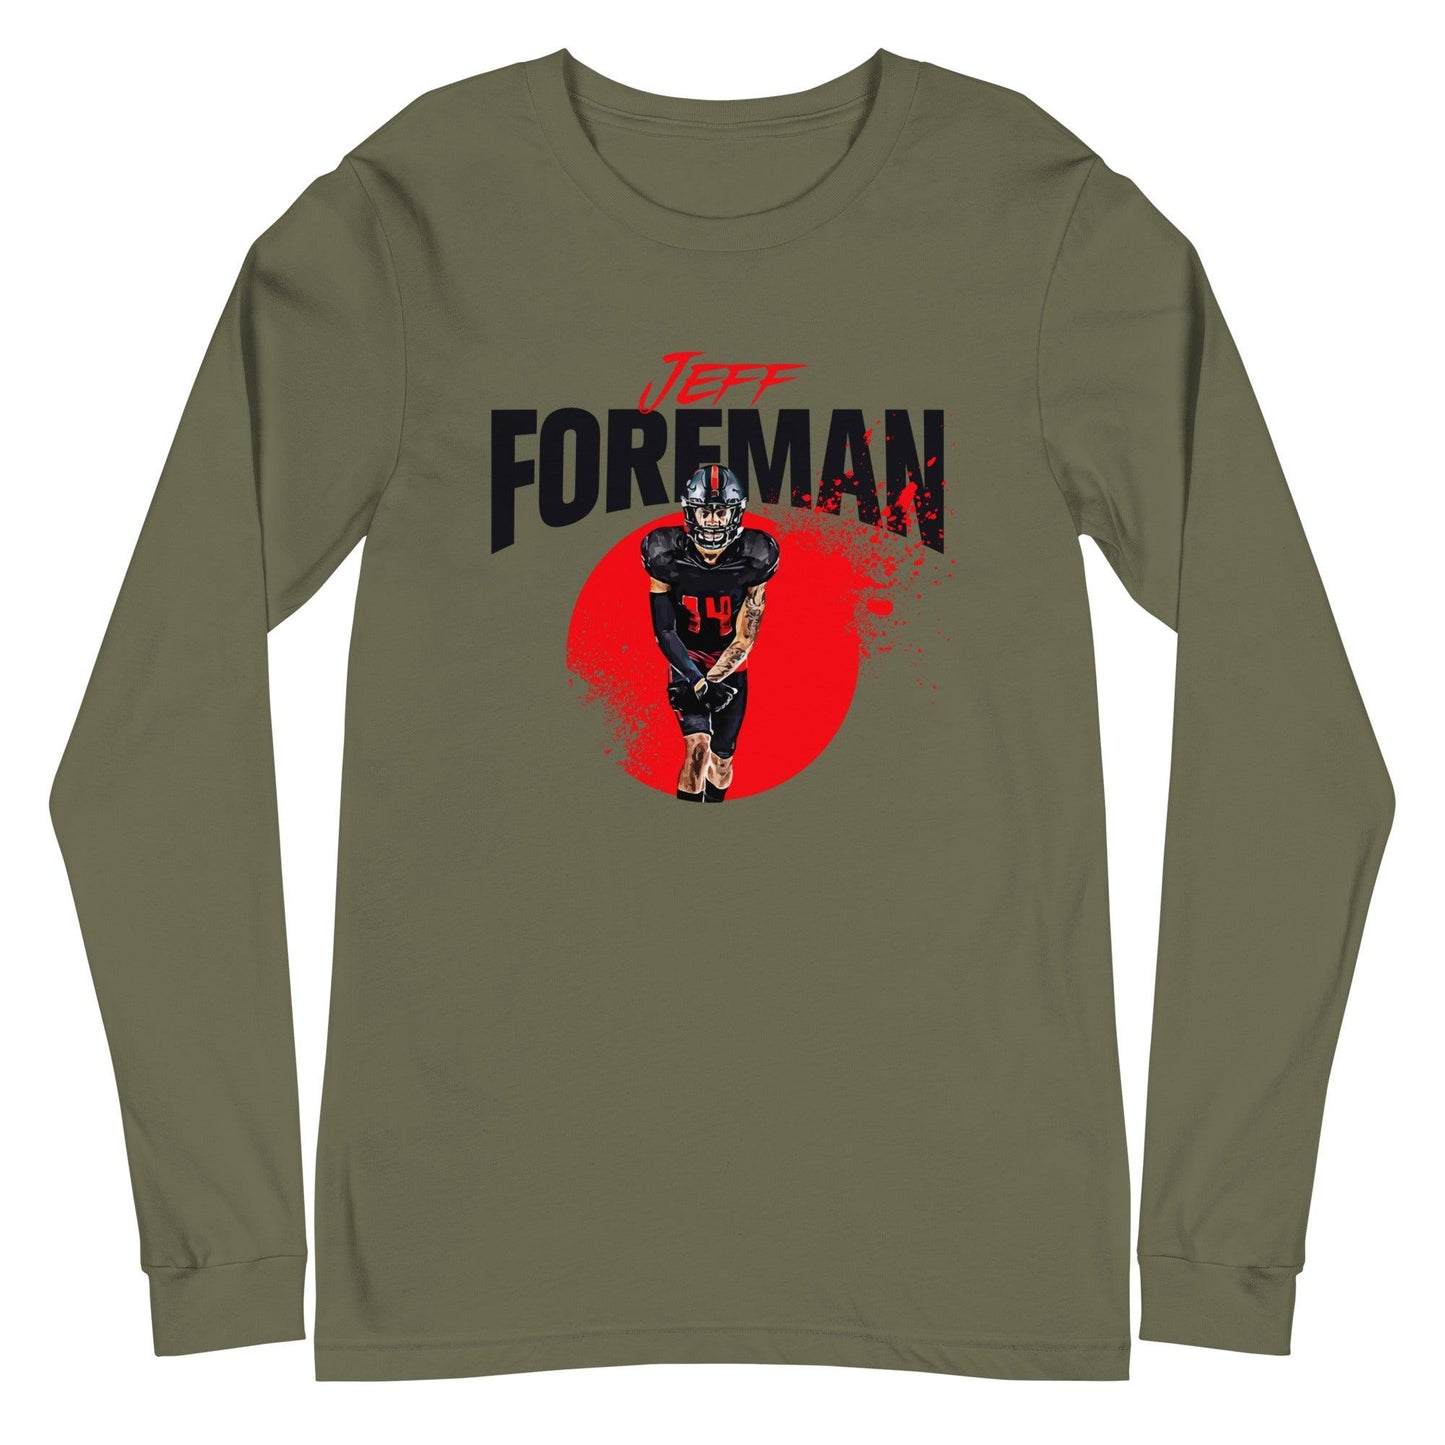 Jeff Foreman "Splash" Long Sleeve Tee - Fan Arch